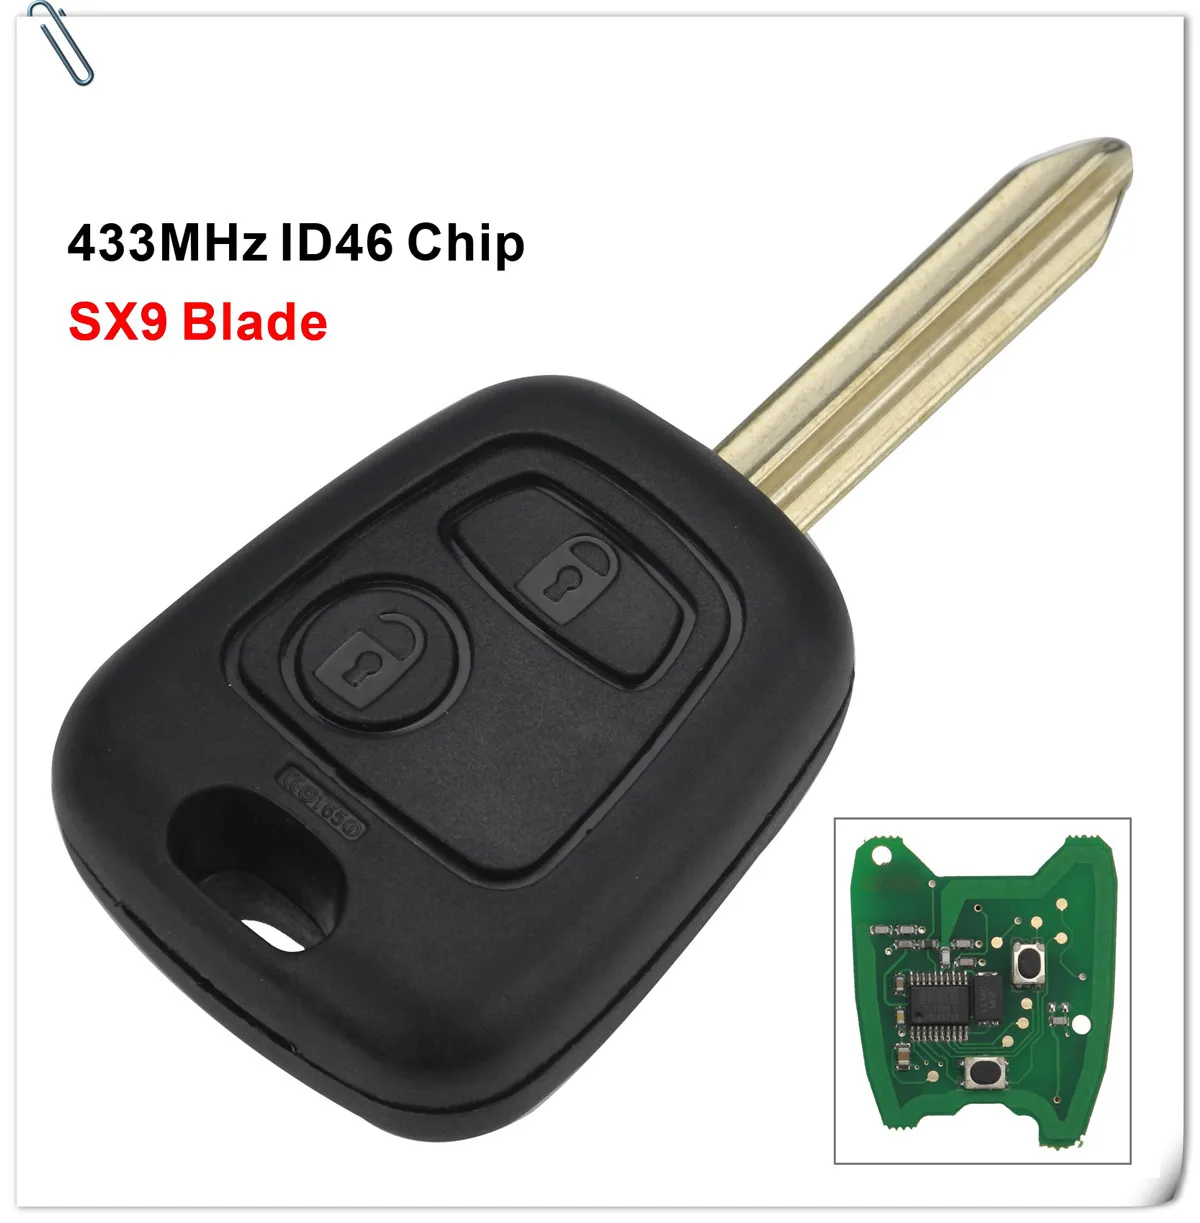 2 кнопки дистанционного ключа автомобиля 433 МГц ID46 pcf7961 для Citroen C1 C2 C3 C4 Saxo Picasso для peugeot 106 206 306 307 107 207 407 партнер